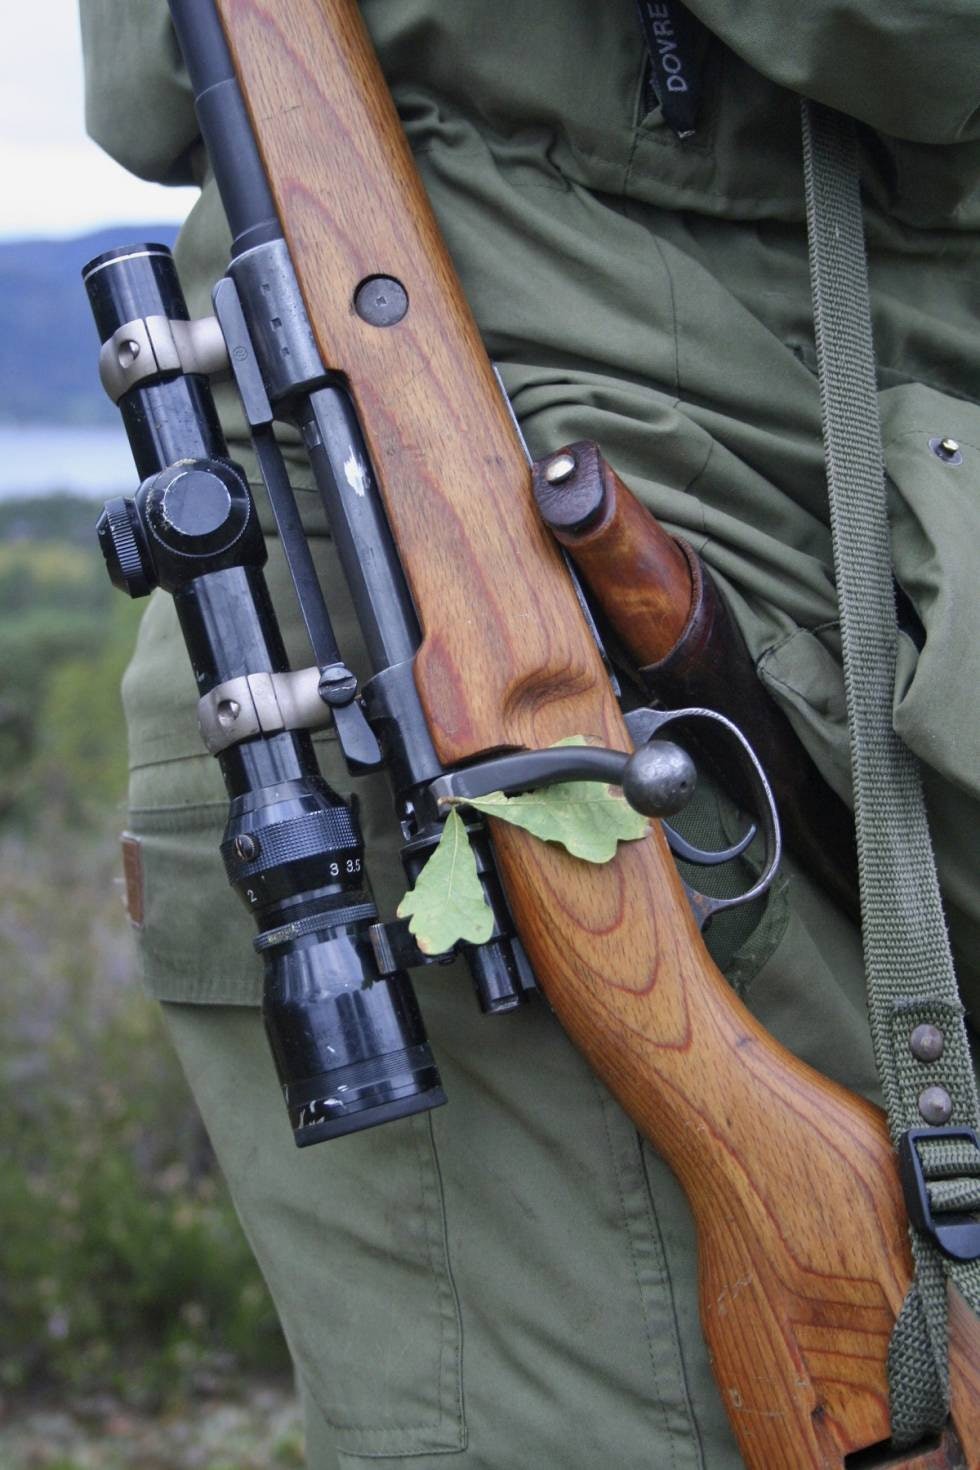 ORIGINALEN: Mauser M98 har vært en bauta i de 122 årene som har gått siden den første rifla med Mauser-låskasse ble serieprodusert i 1898. Mausersystemet er uten tvil det systemet som er benyttet av flest rifleprodusenter i hele verden.